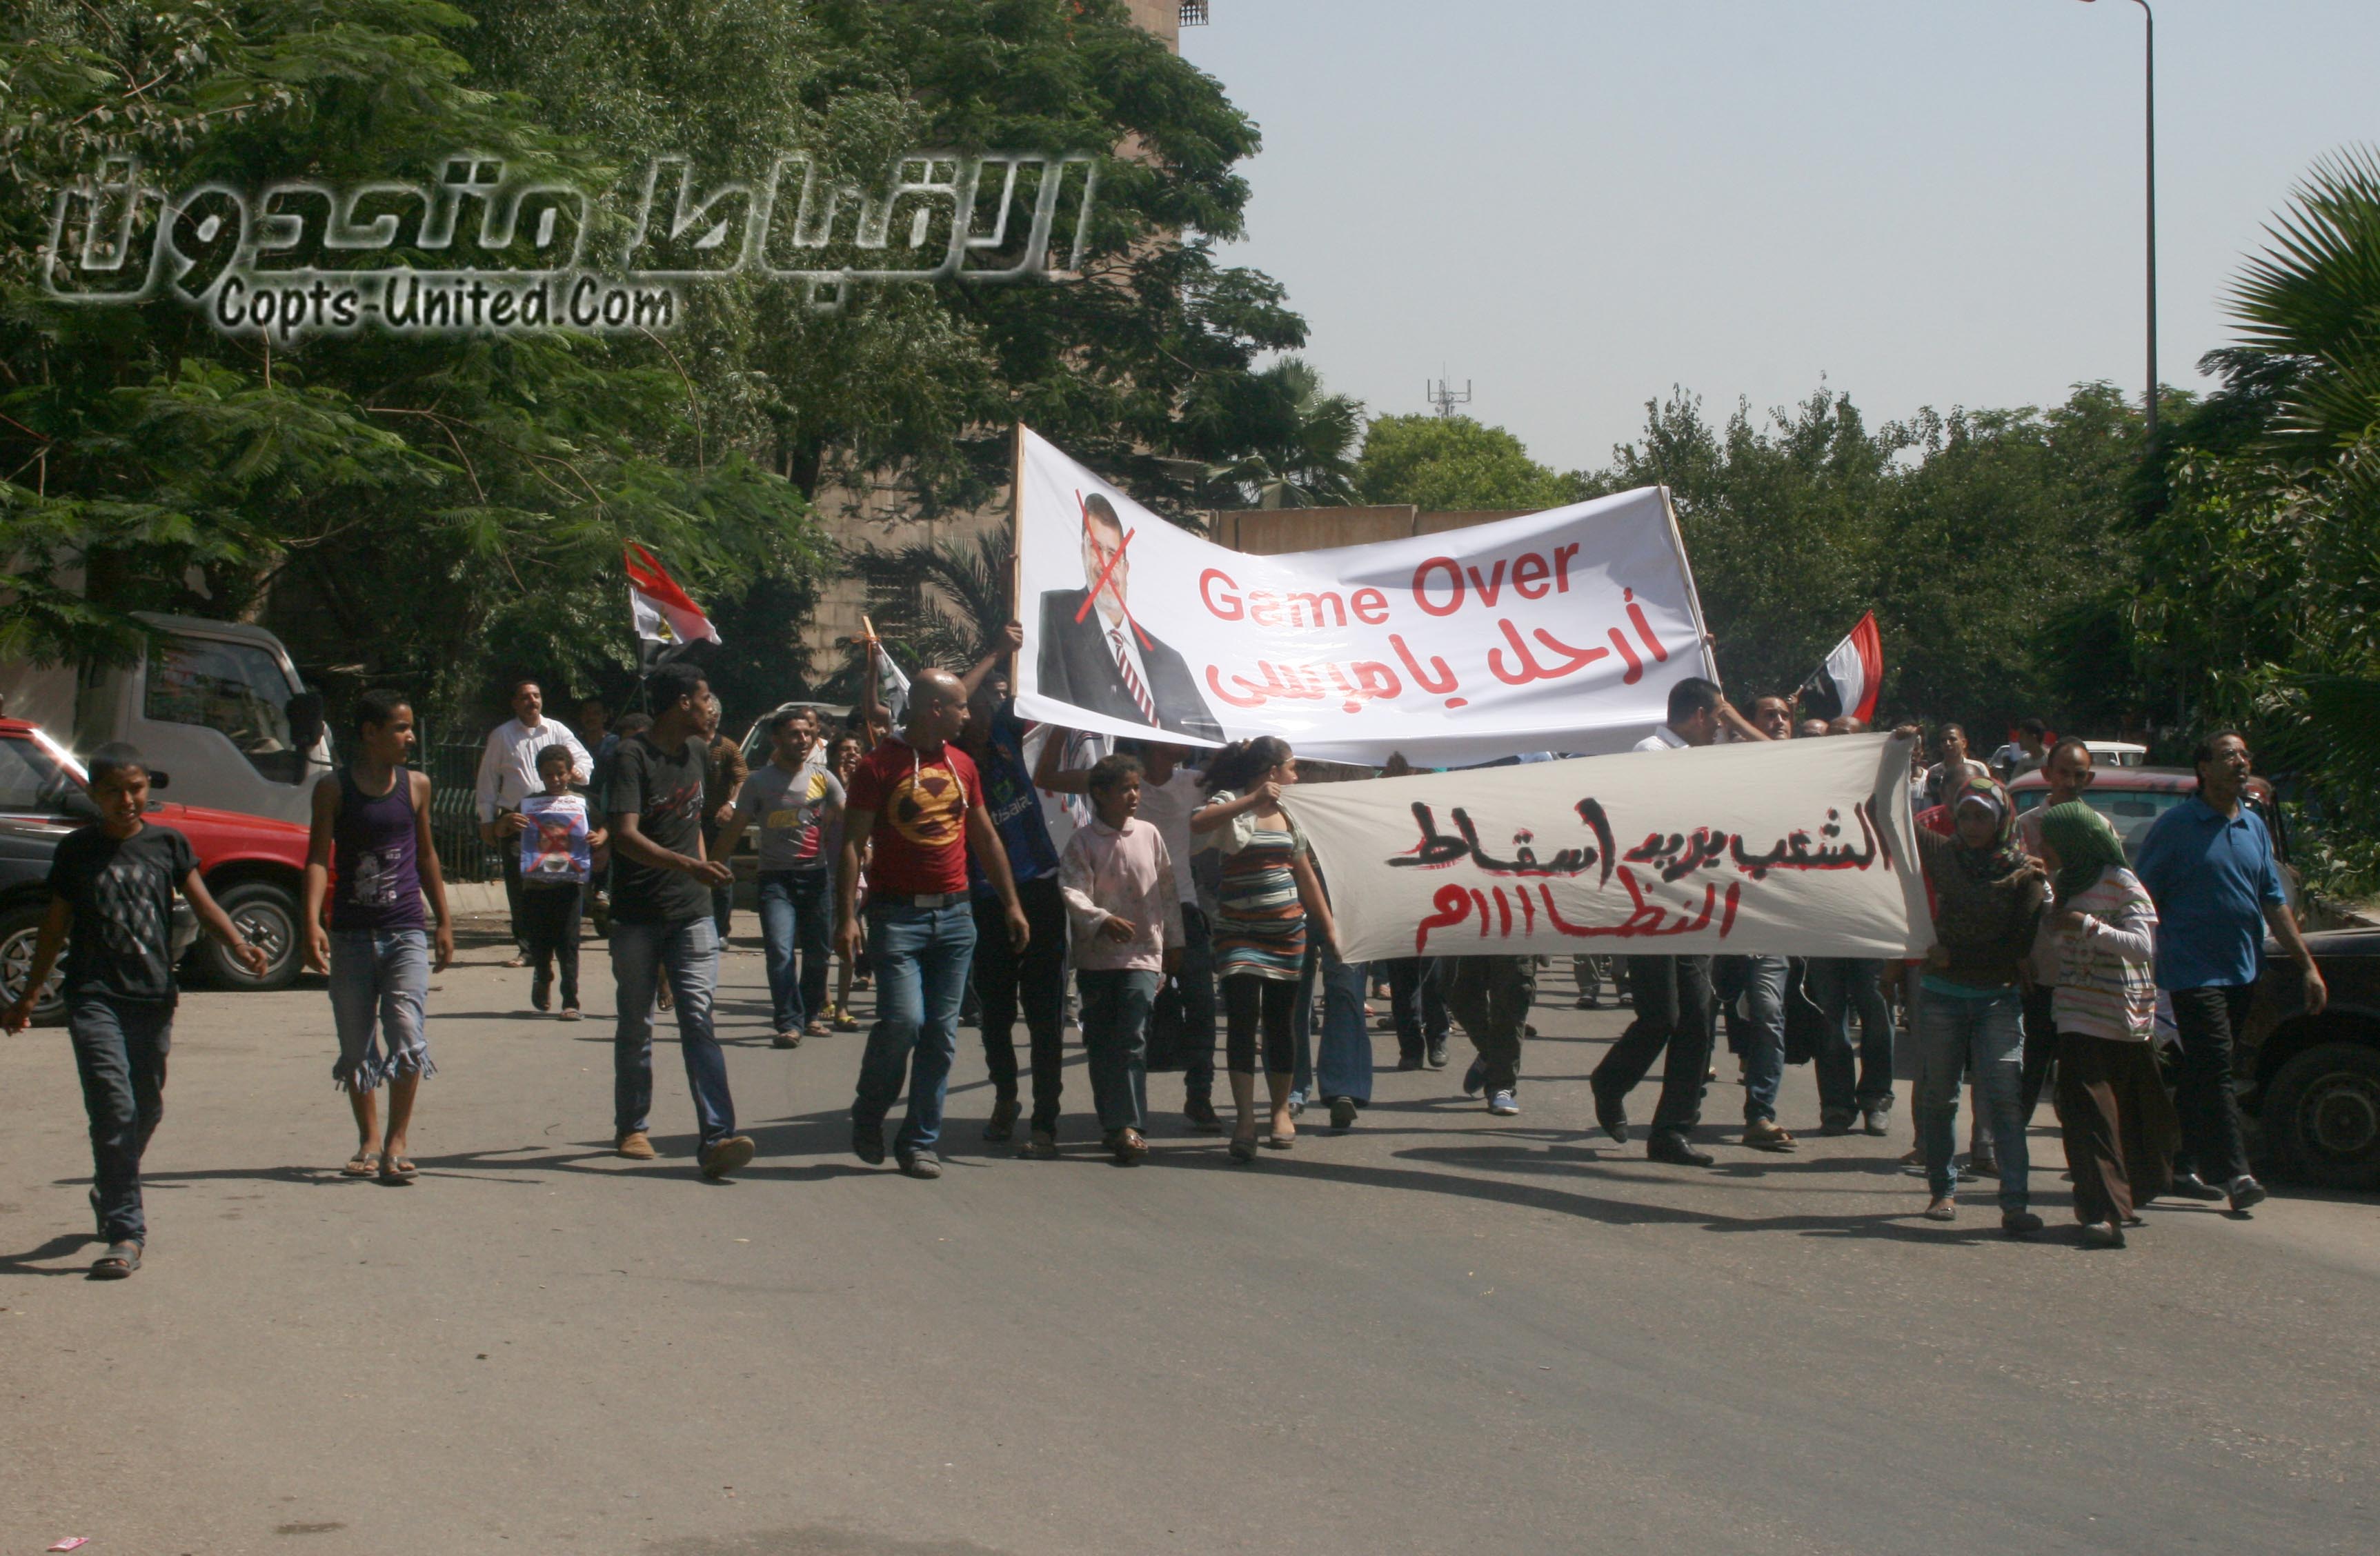 بالصور: المسيرات المعارضة لمرسي تجوب ميادين وشوارع القاهرة